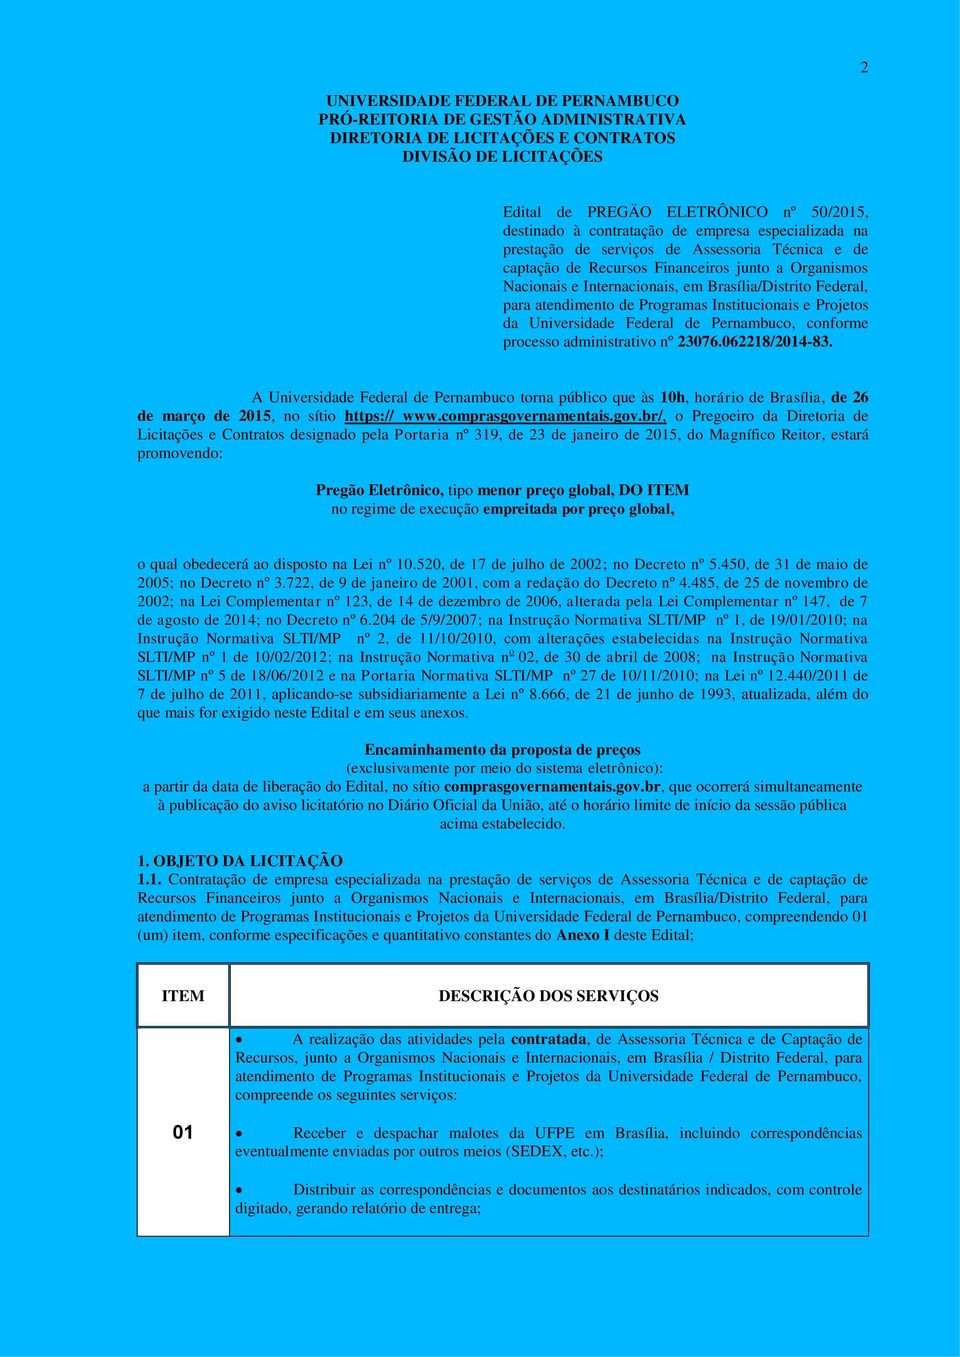 atendimento de Programas Institucionais e Projetos da Universidade Federal de Pernambuco, conforme processo administrativo nº 23076.062218/2014-83.